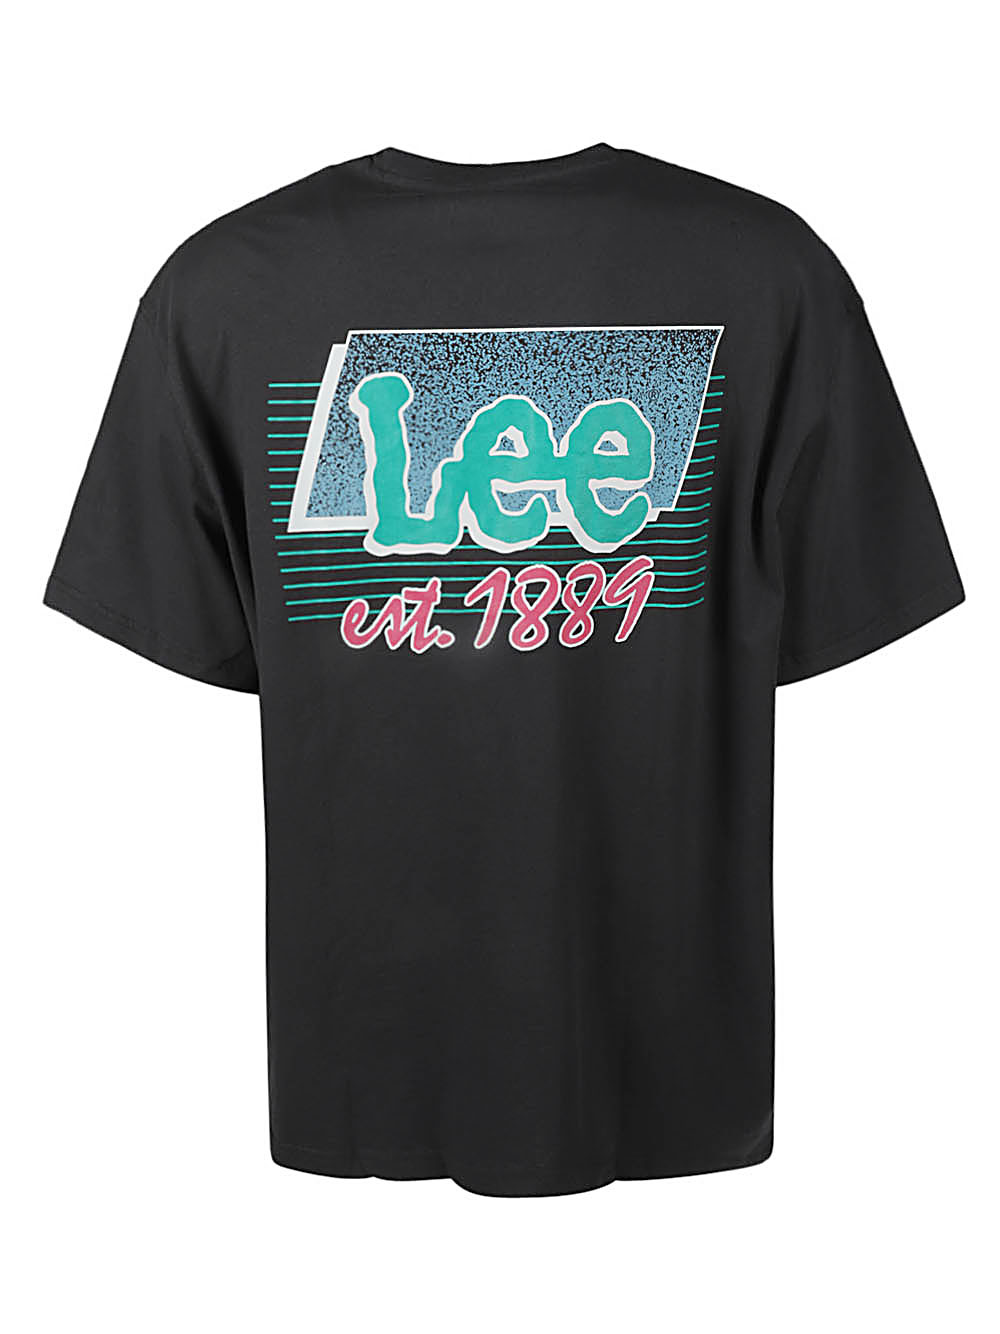 Lee Jeans LEE JEANS- Logo Cotton T-shirt